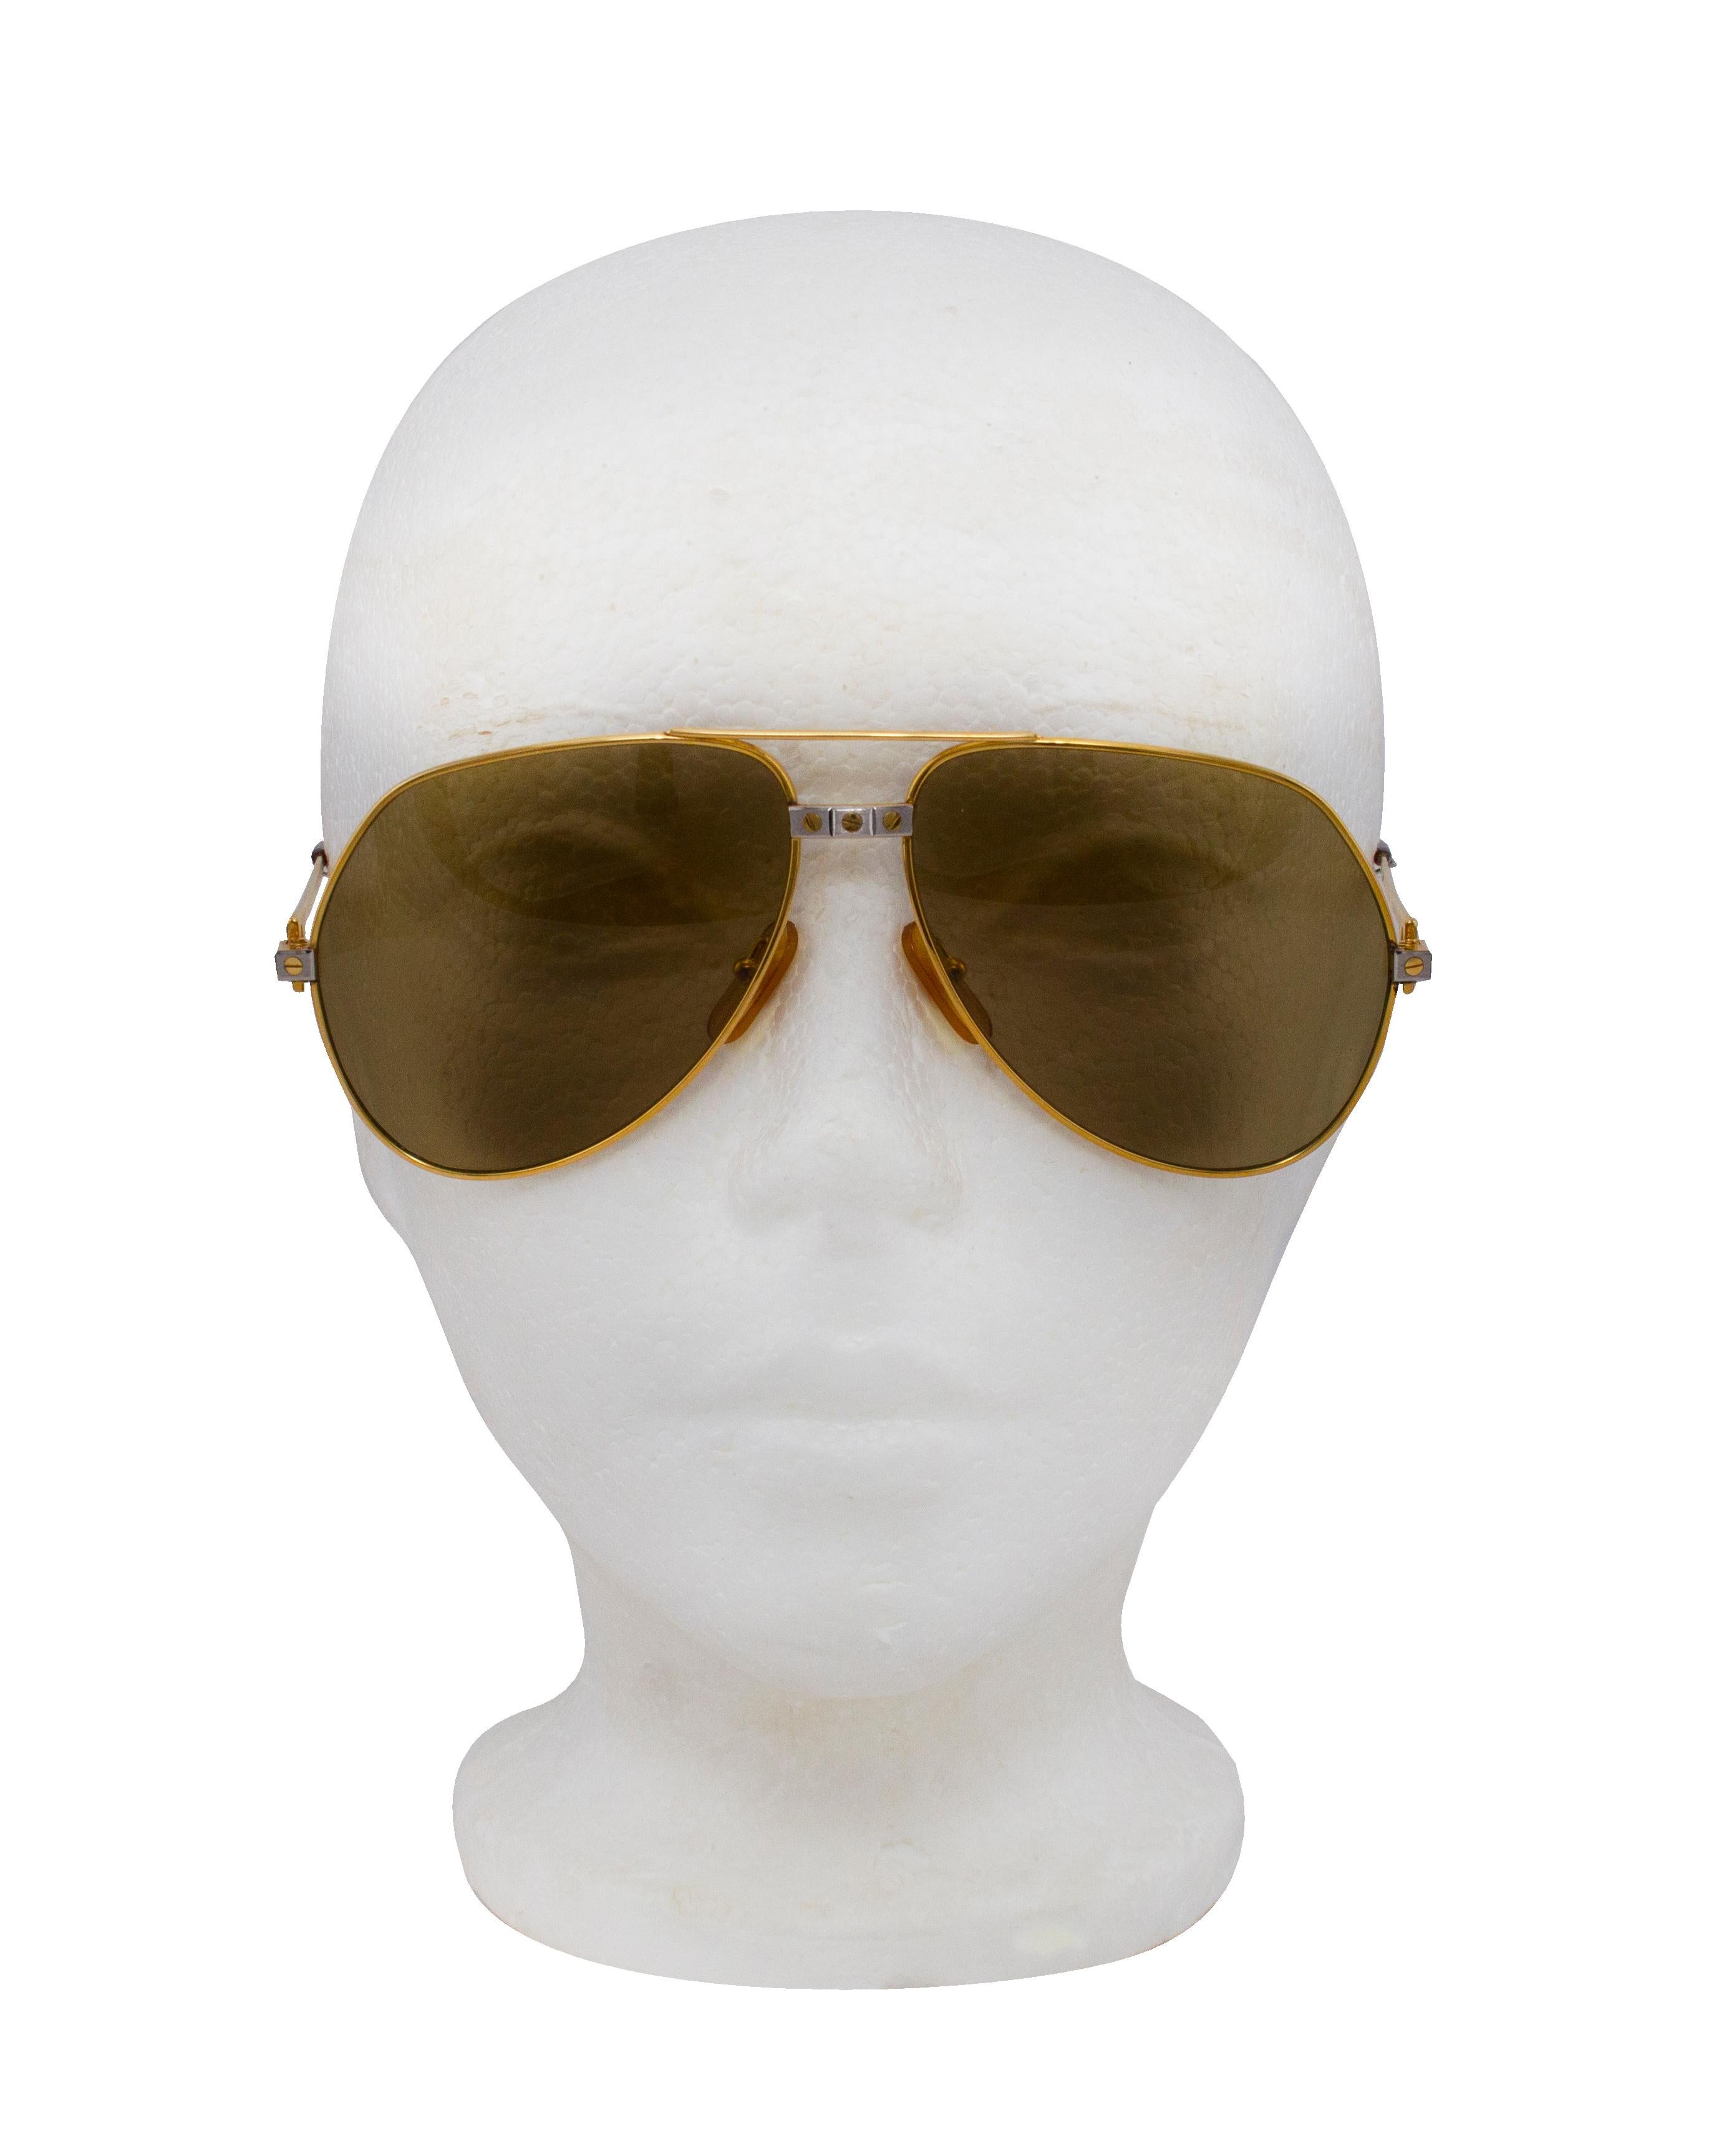 Diese Fliegerbrille von Cartier ist das Nonplusultra unter den Vintage-Sonnenbrillen. Die Romance Santos Pilotenbrille stammt aus den 1980er Jahren. Goldfarbene Fassung und Bügel mit Cartier-Schraubendetails auf dem Steg und den Bügeln in einer